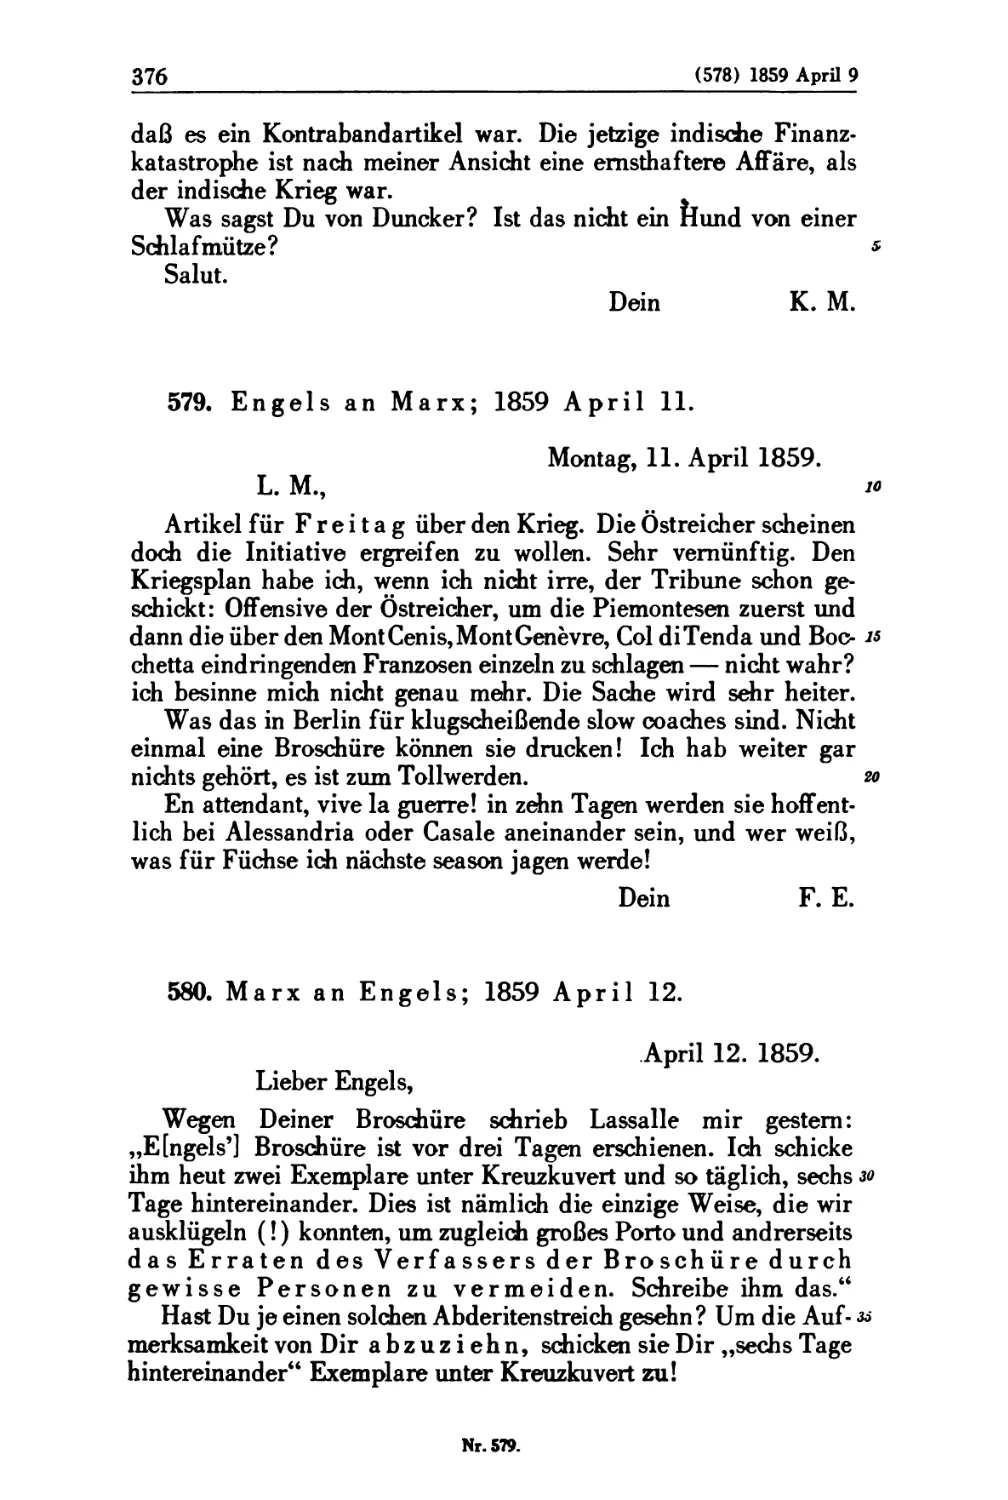 579. Engels an Marx; 1859 April 11
580. Marx an Engels; 1859 April 12